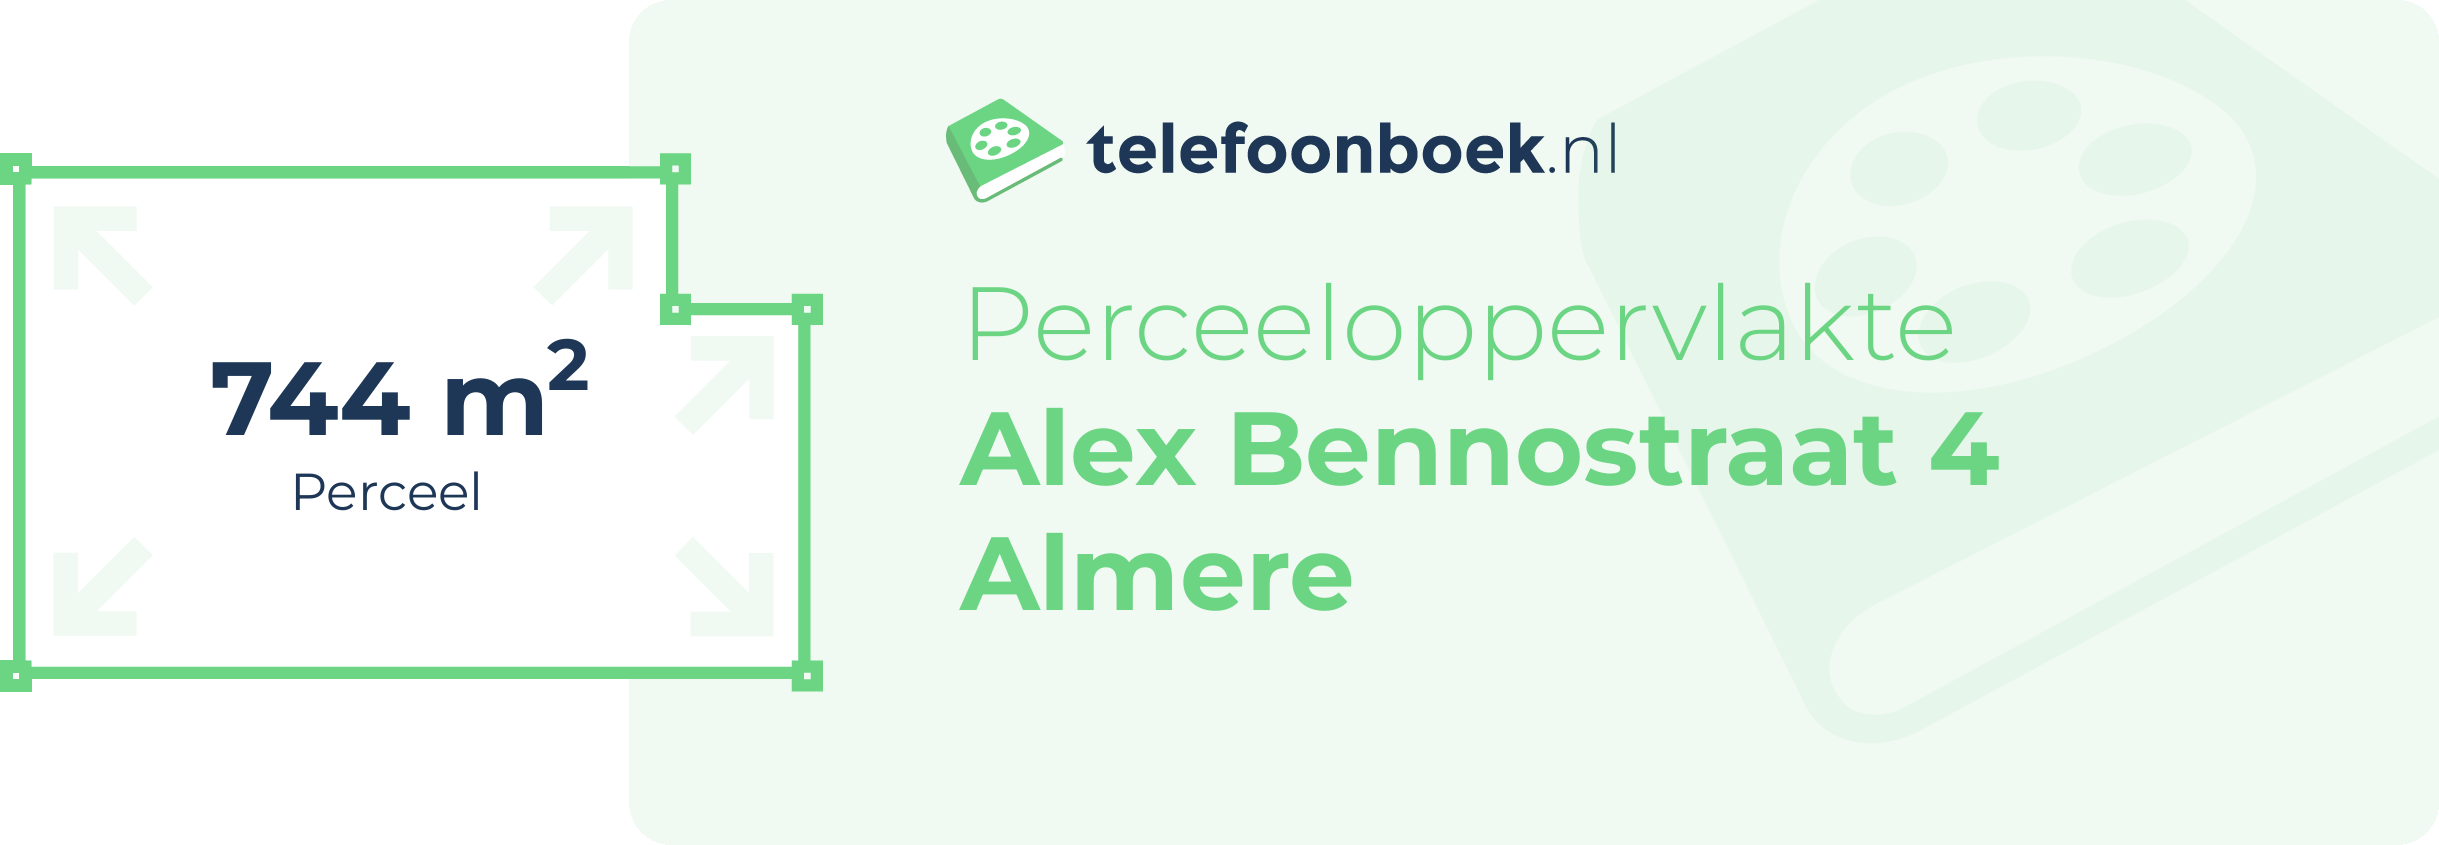 Perceeloppervlakte Alex Bennostraat 4 Almere